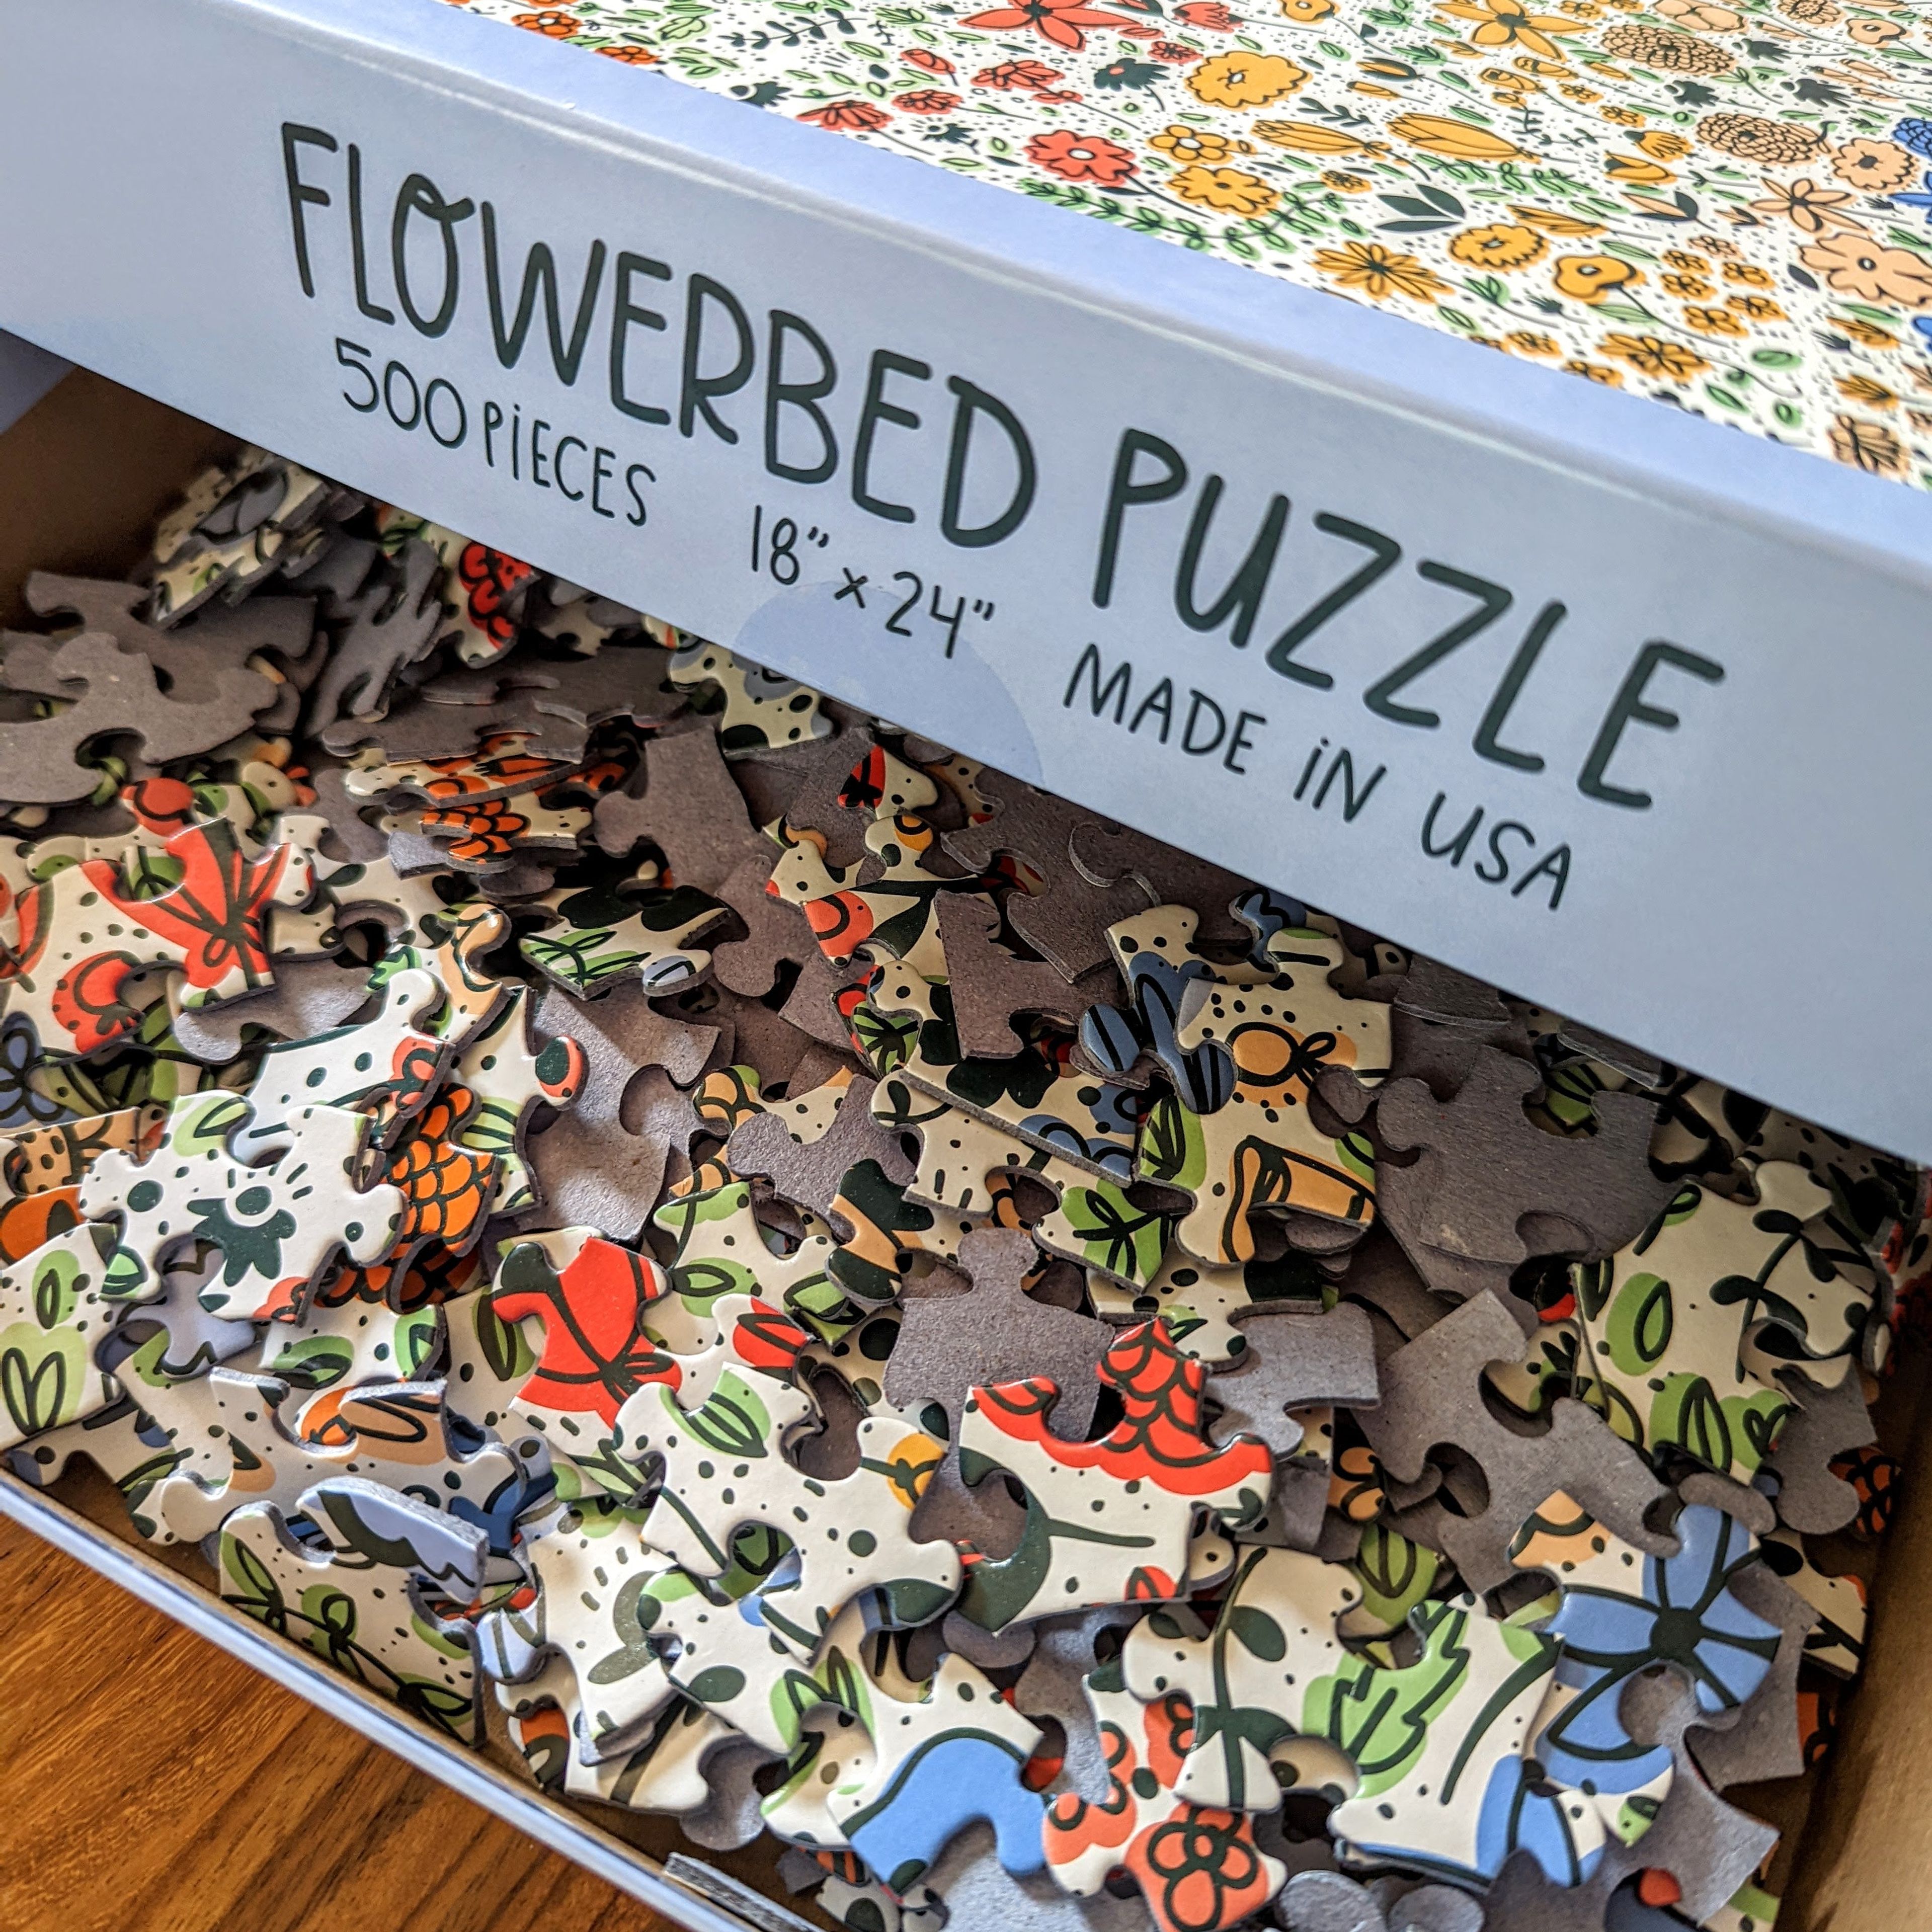 Flowerbed Puzzle